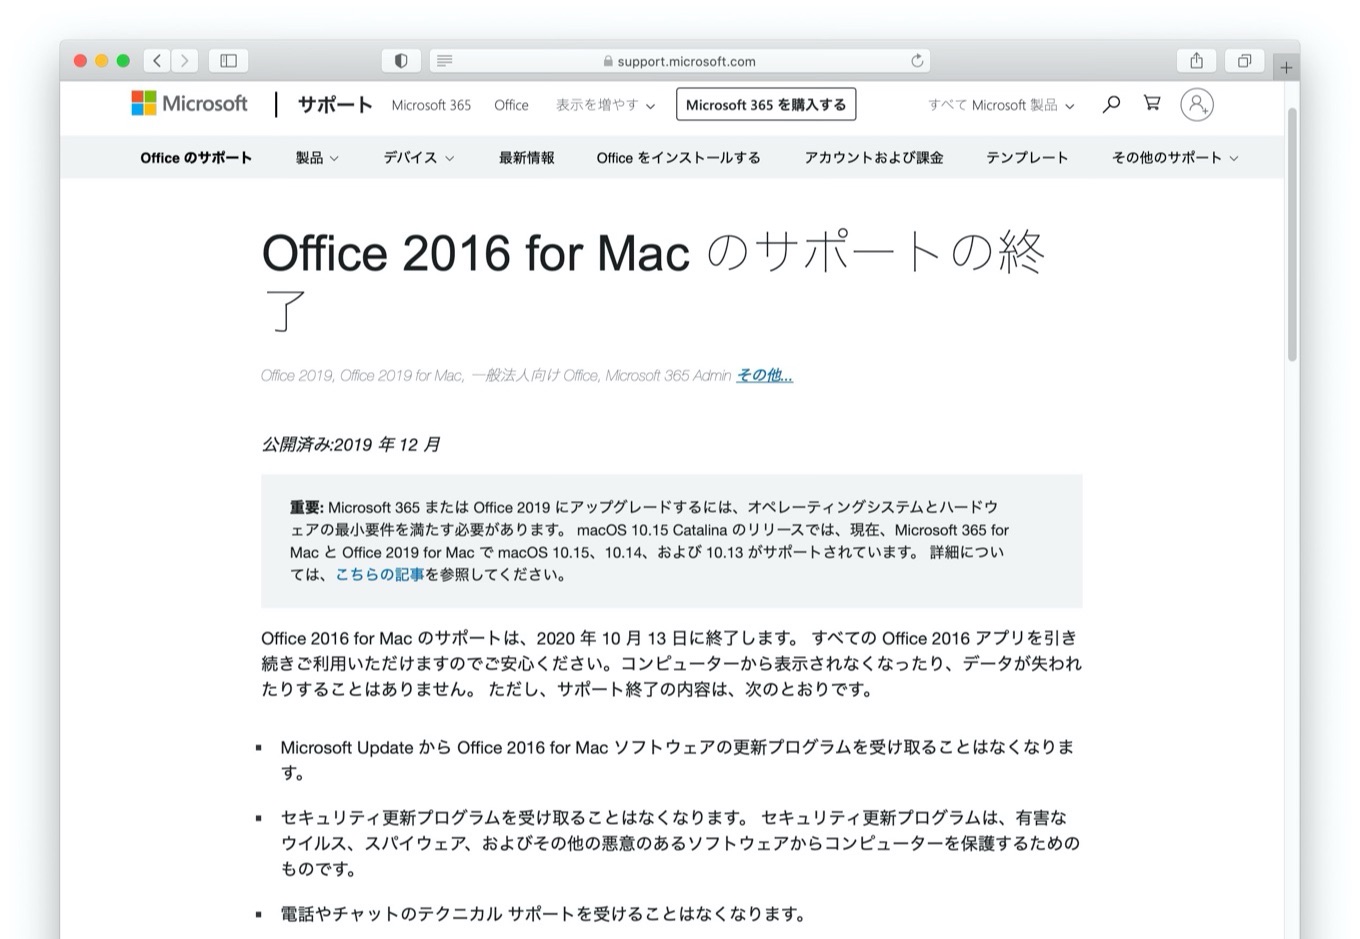 Office 2016 for Mac のサポートの終了